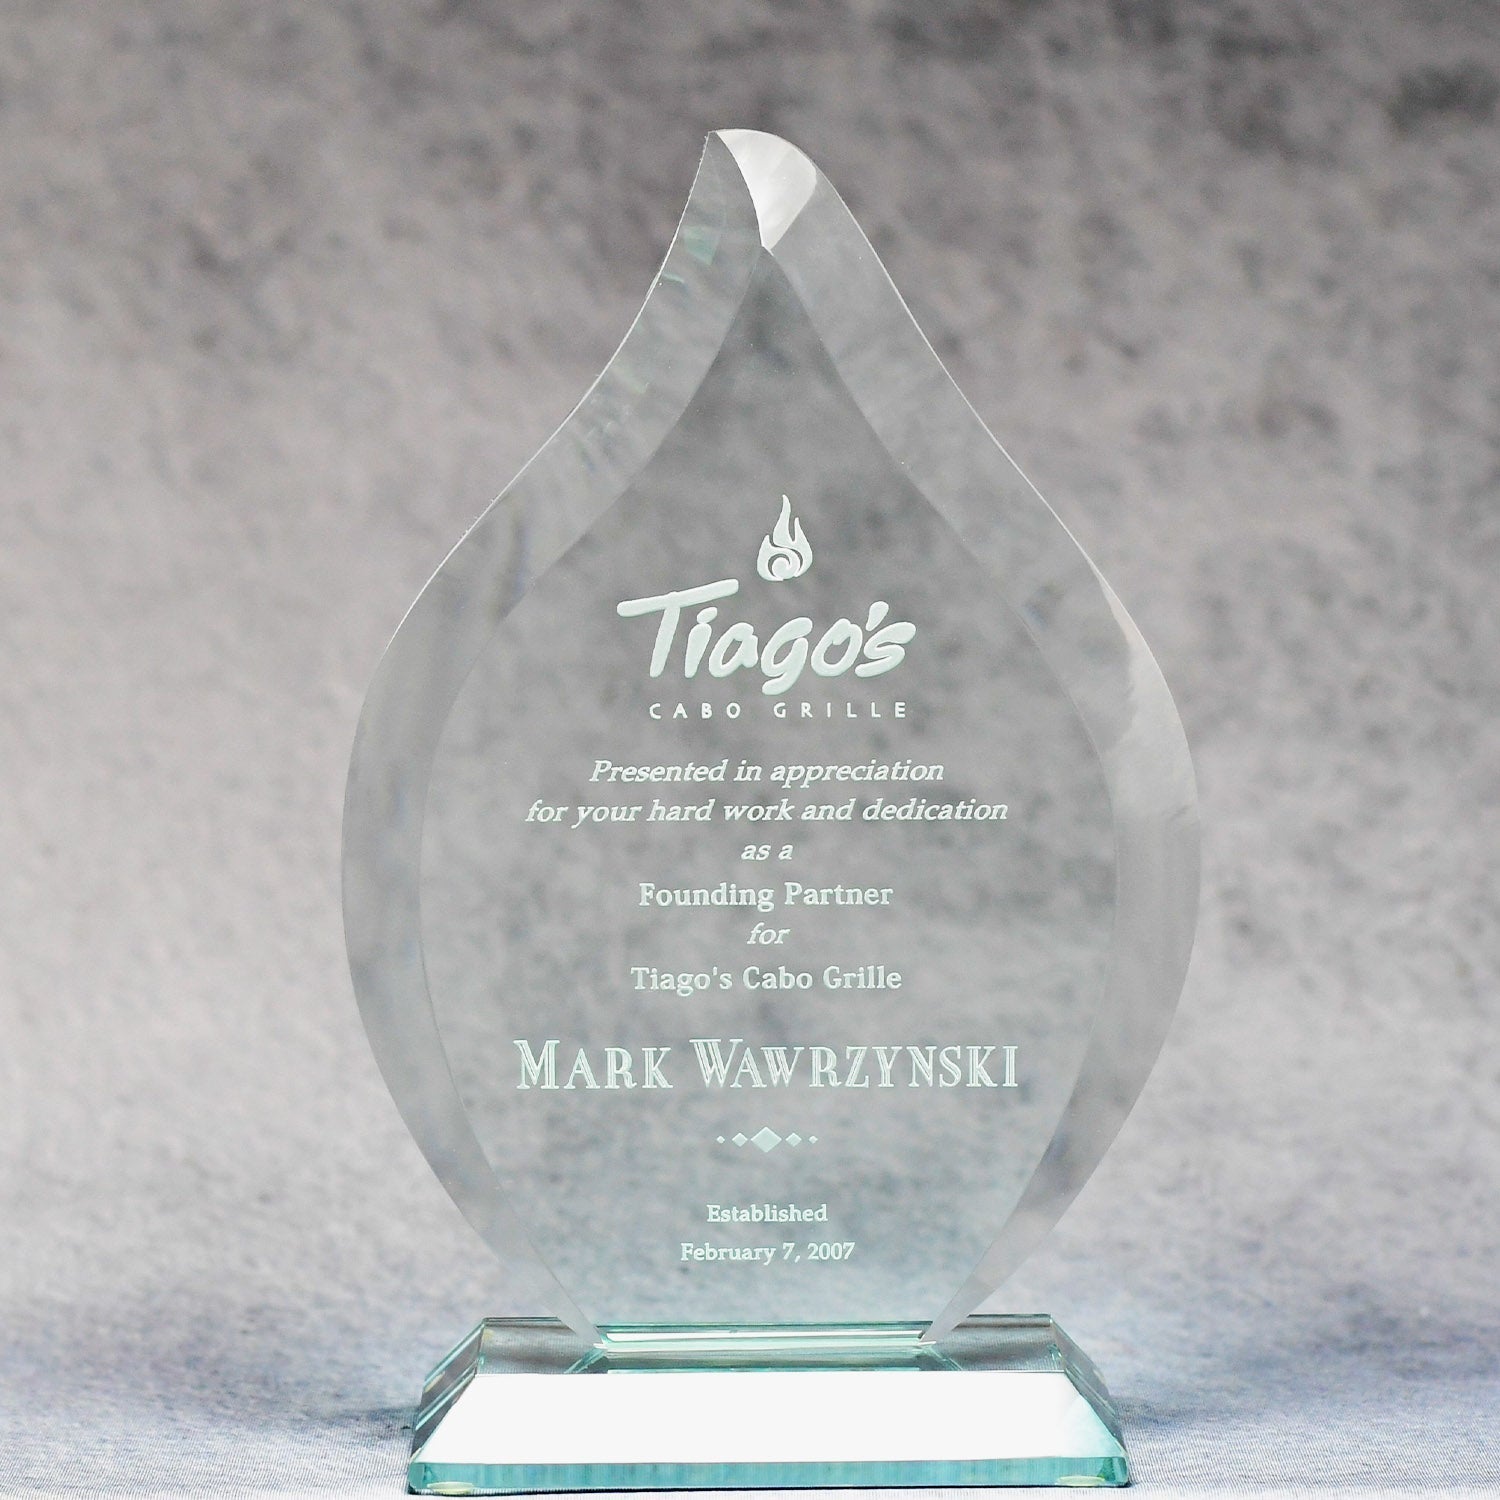 Jade Glass Fire | Alliance Awards LLC.